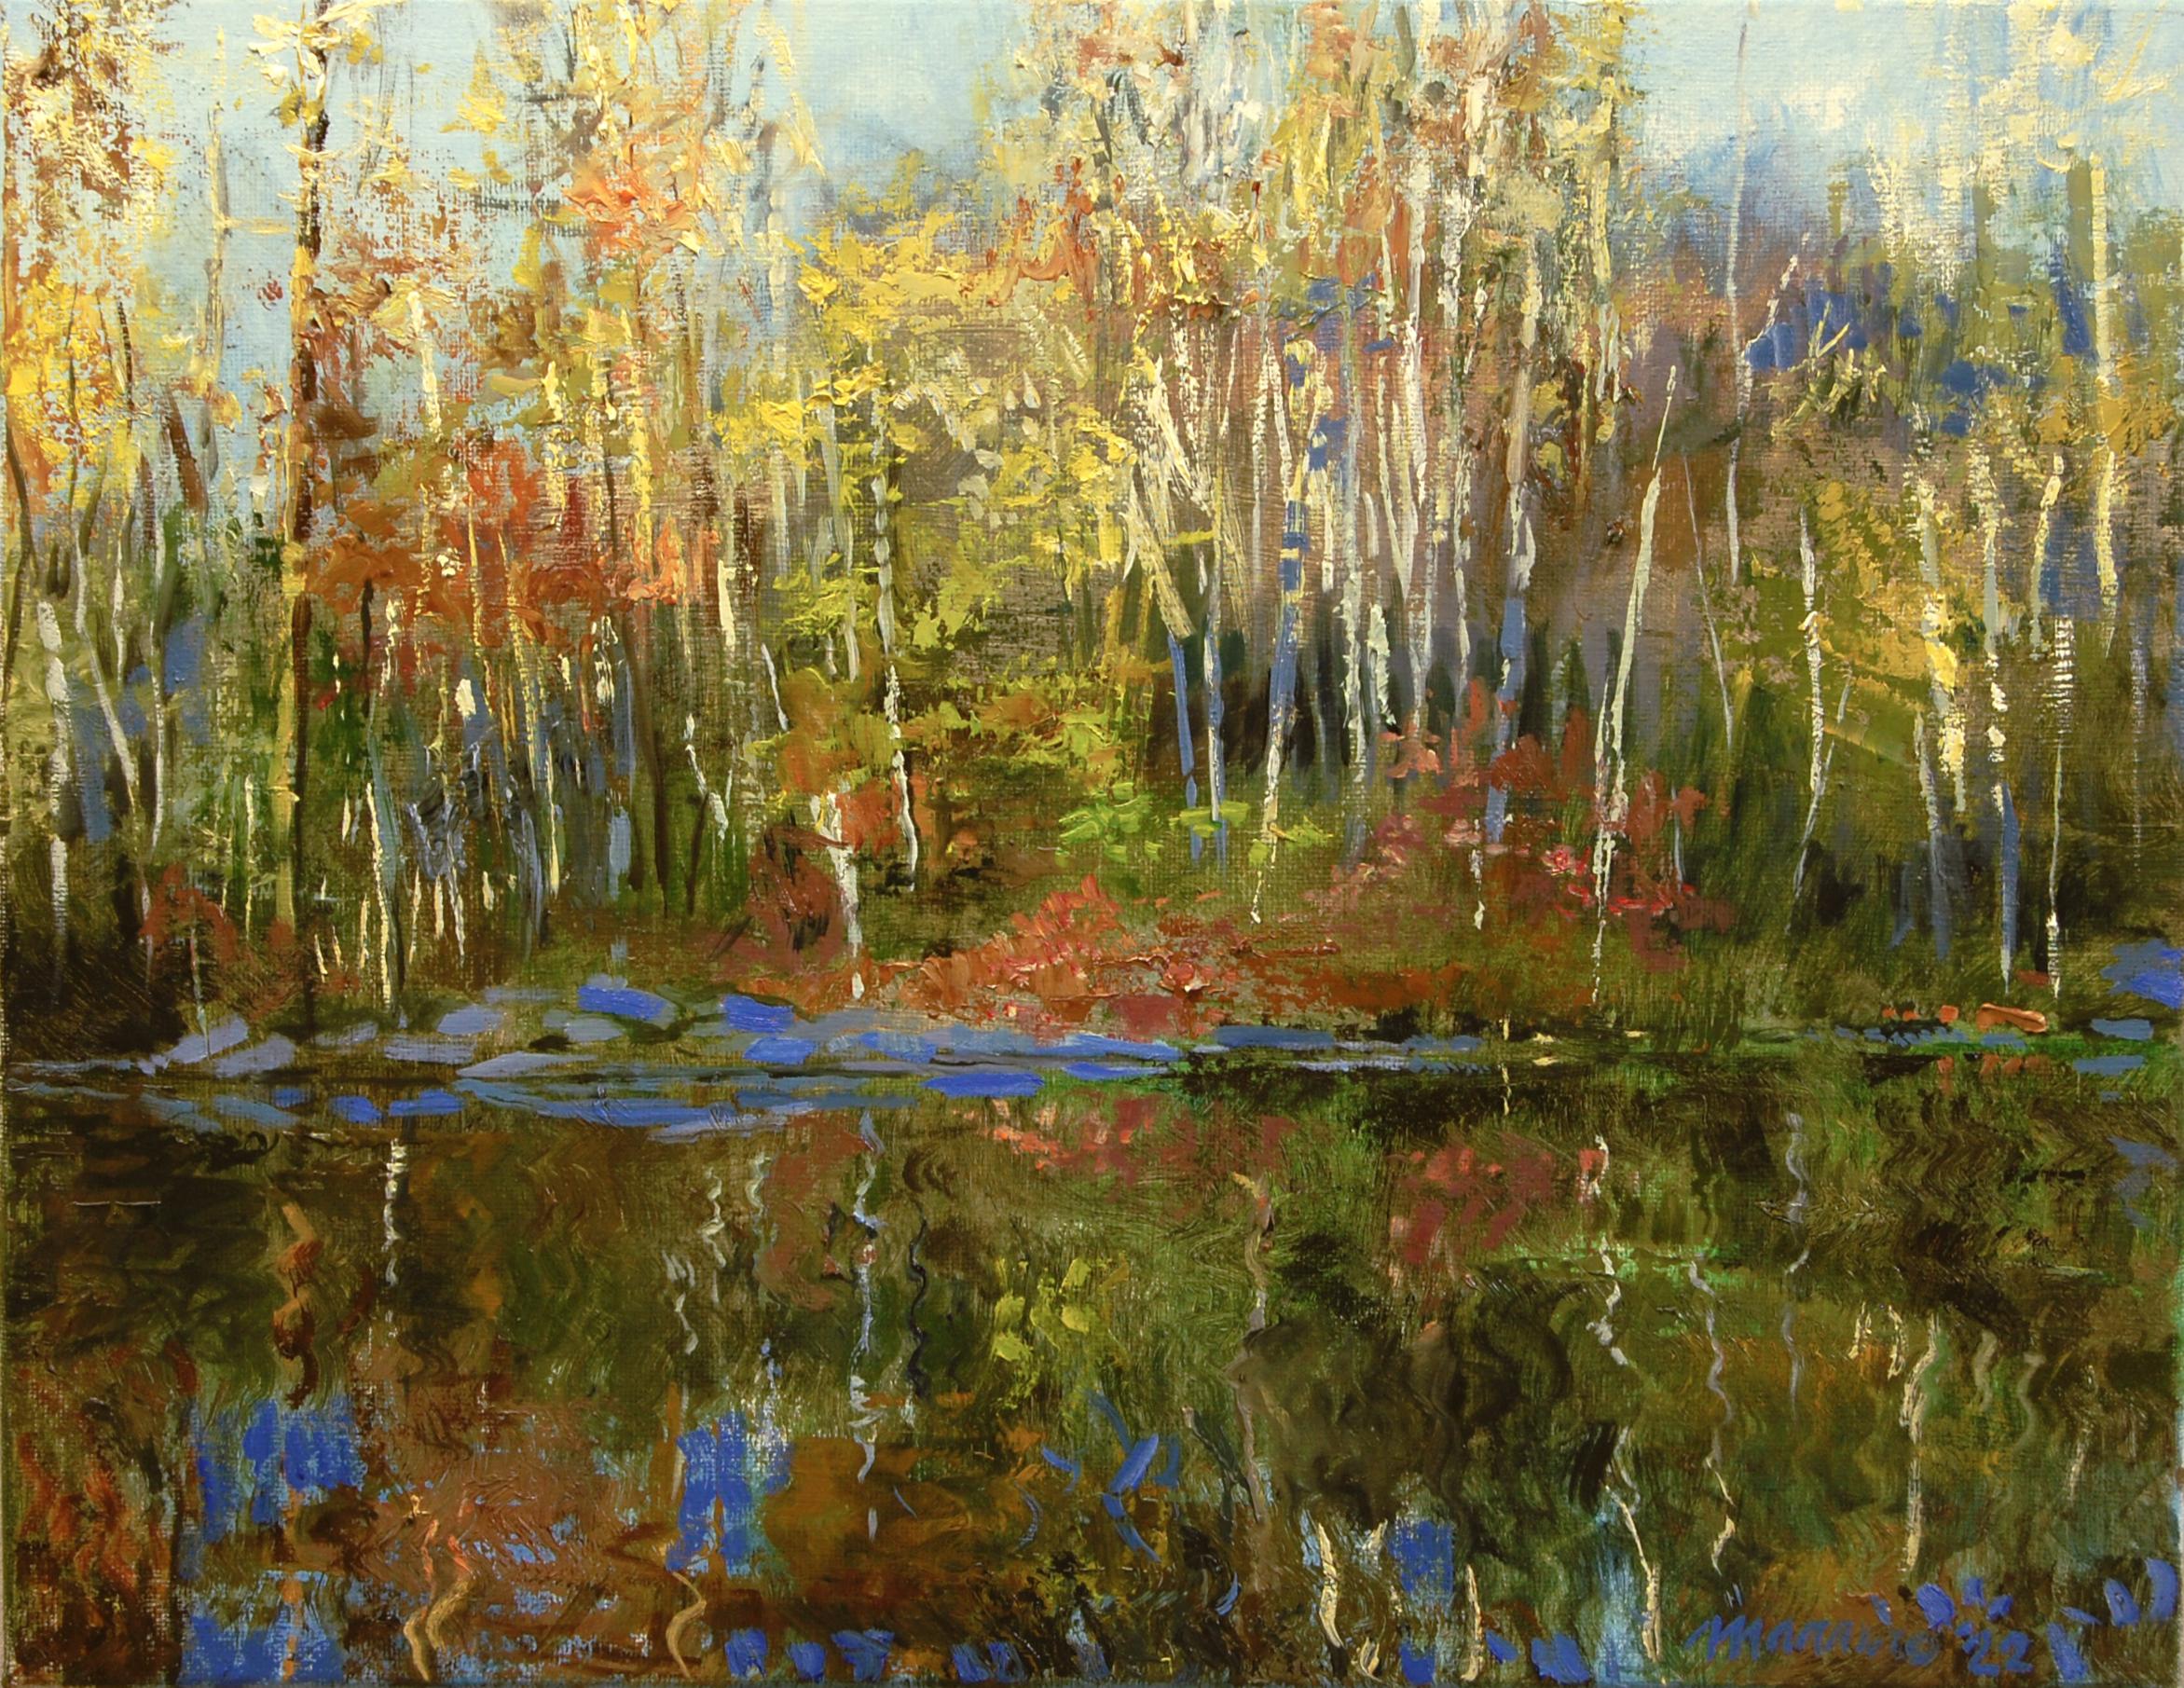 Morning Light Still Water, Oil Painting